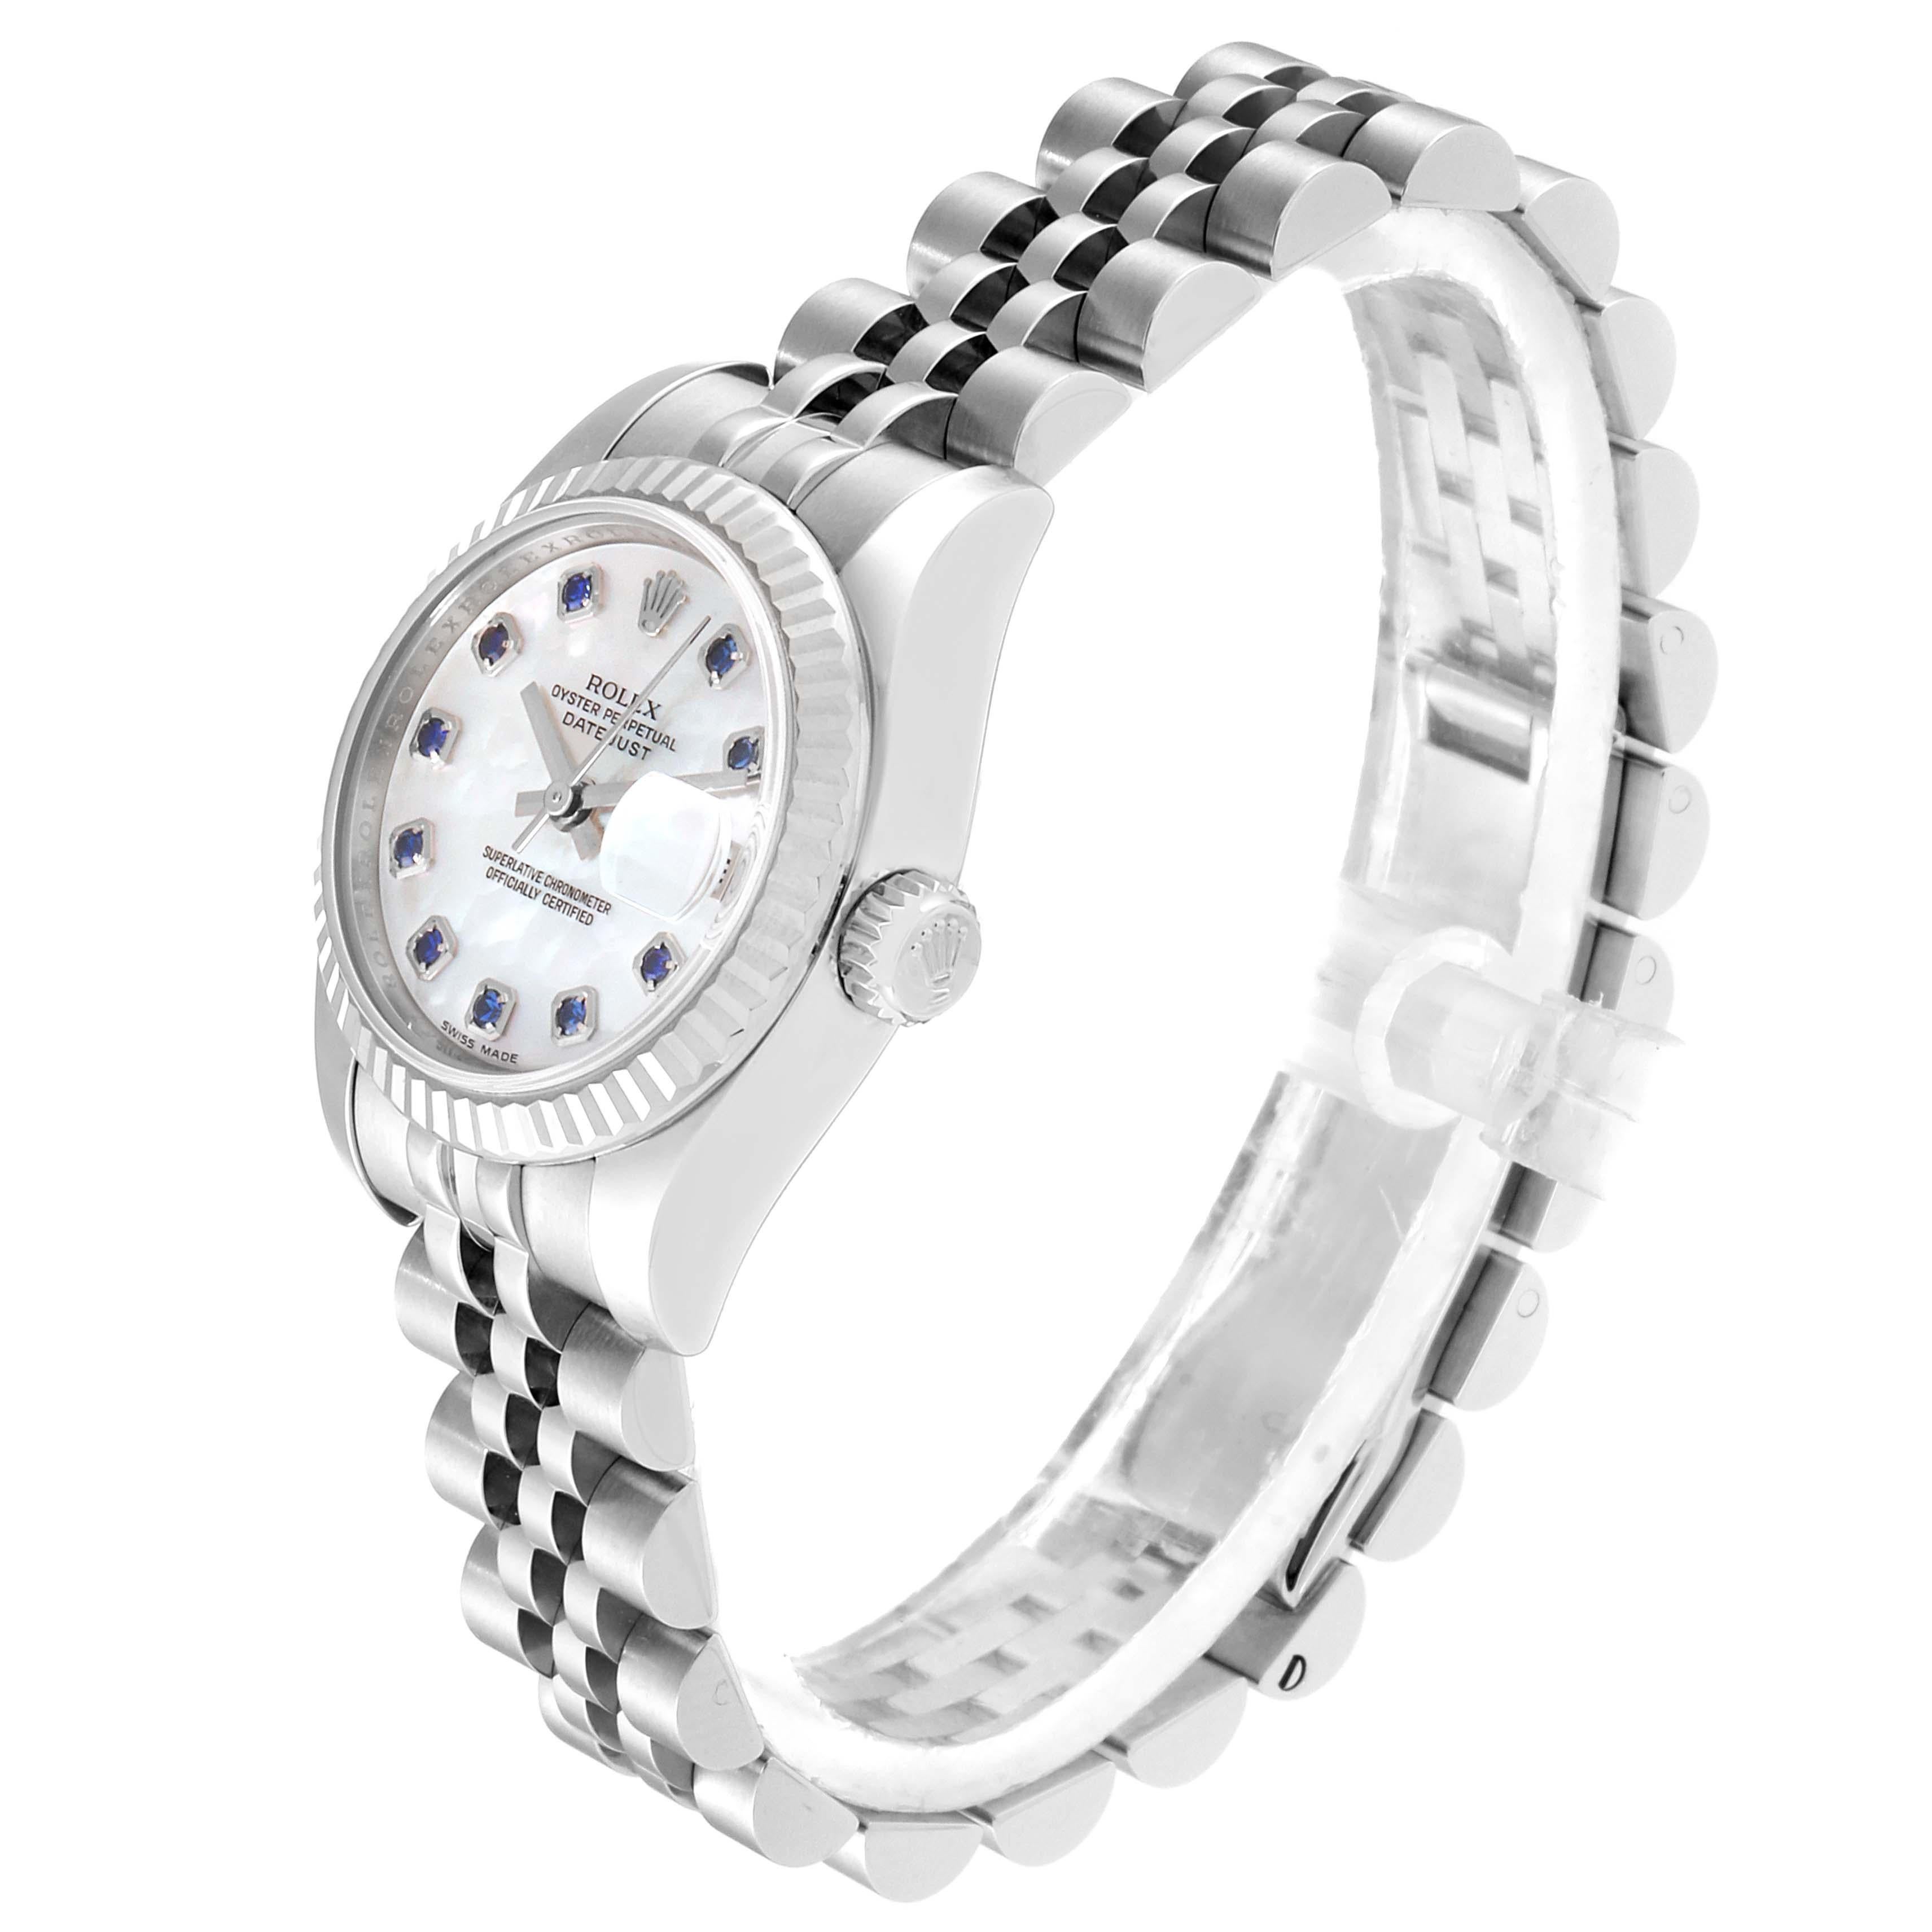 Women's Rolex Datejust Steel White Gold MOP Saphire Ladies Watch 179174 Box Card